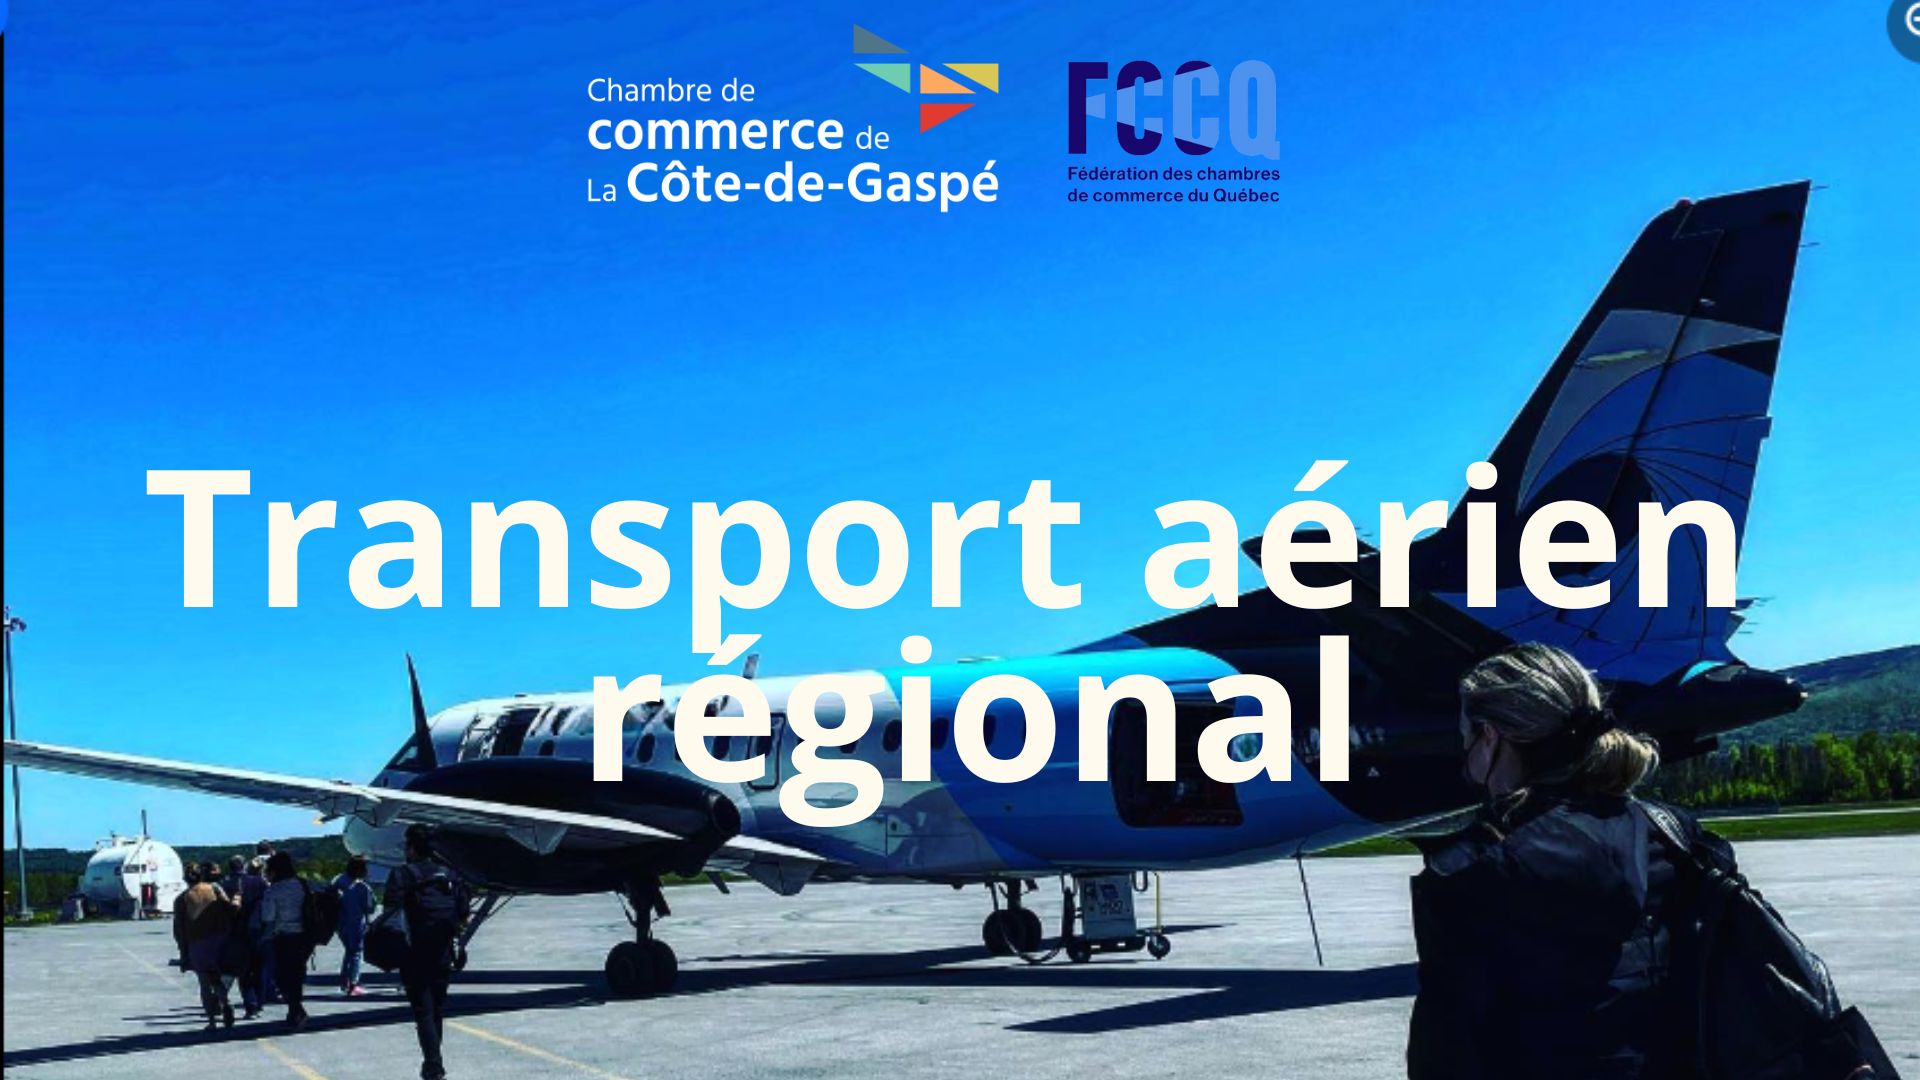 Les chambres de commerce demandent au gouvernement de préciser ses intentions pour améliorer le transport aérien régional au Québec